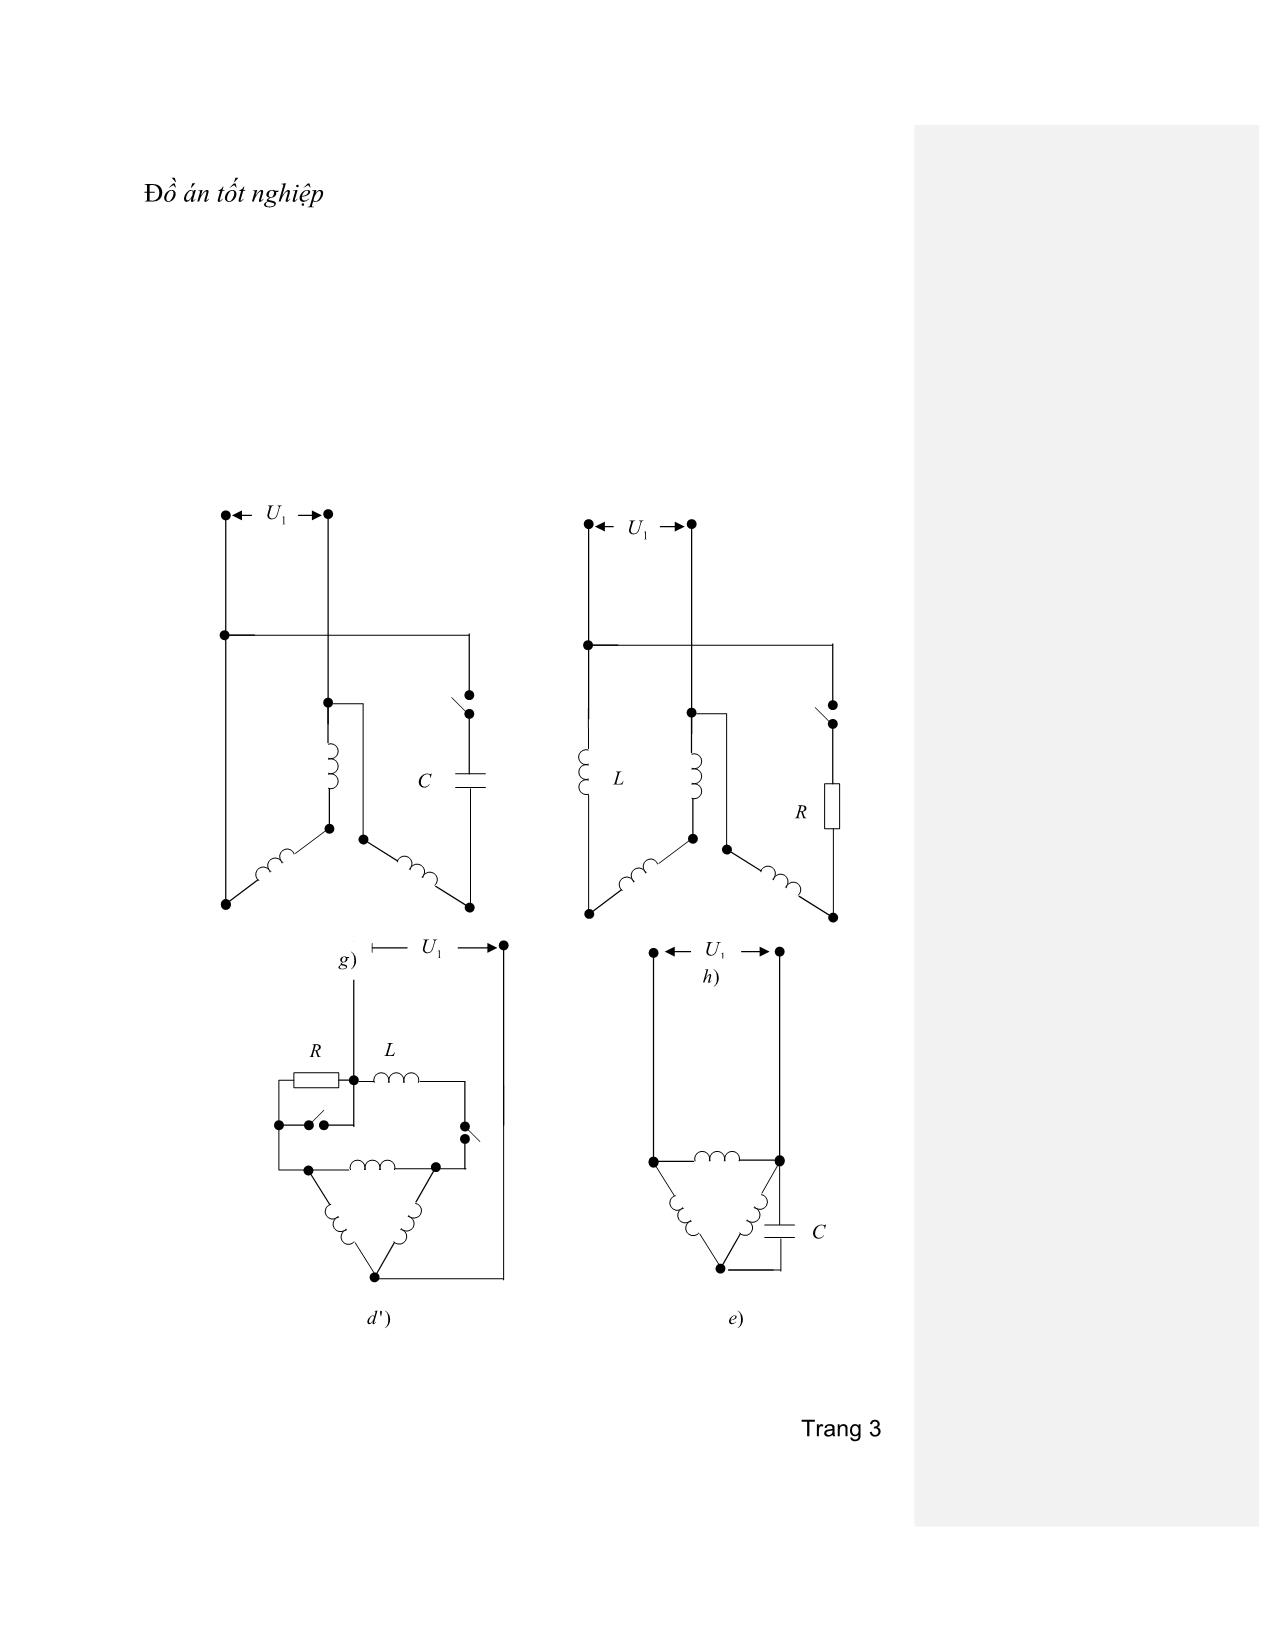 Đồ án Tìm hiểu phương pháp thiết kế động cơ không đồng bộ vạn năng trang 4